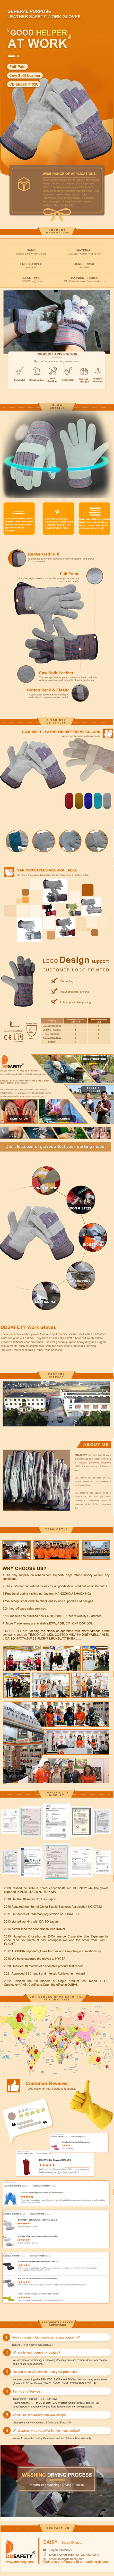 Leather Work Gloves - DLC215 Leather Work Gloves - DLC215 gloves,Work Gloves,Leather Work Gloves